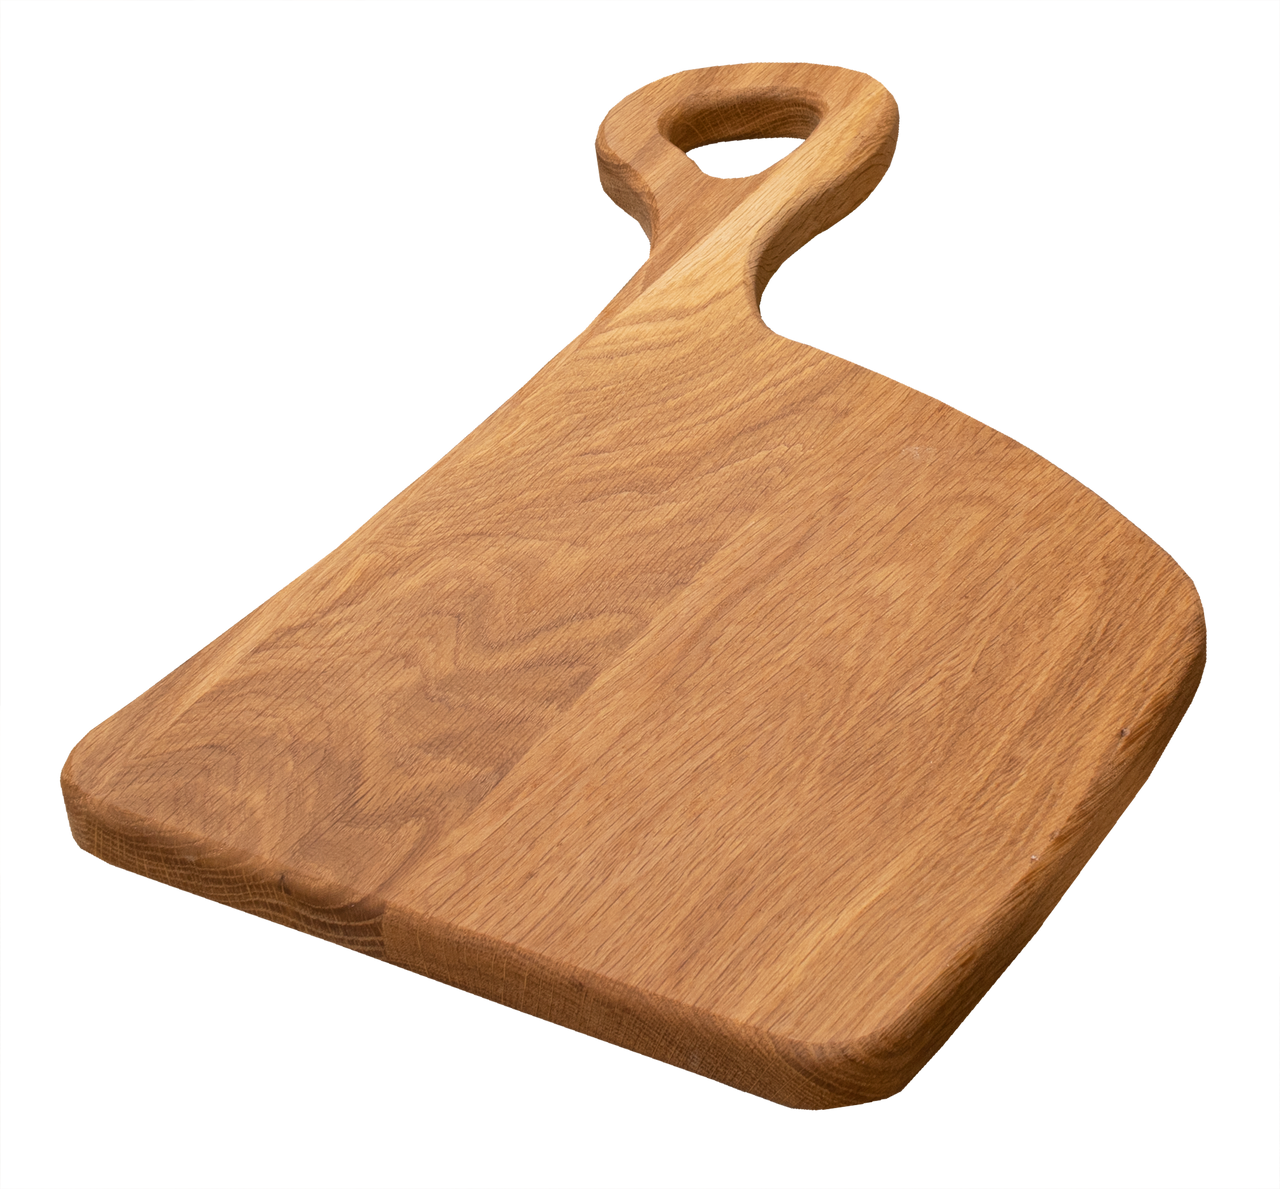 White Oak Bread Serving Board Wood Kitchen Food Chopping Board